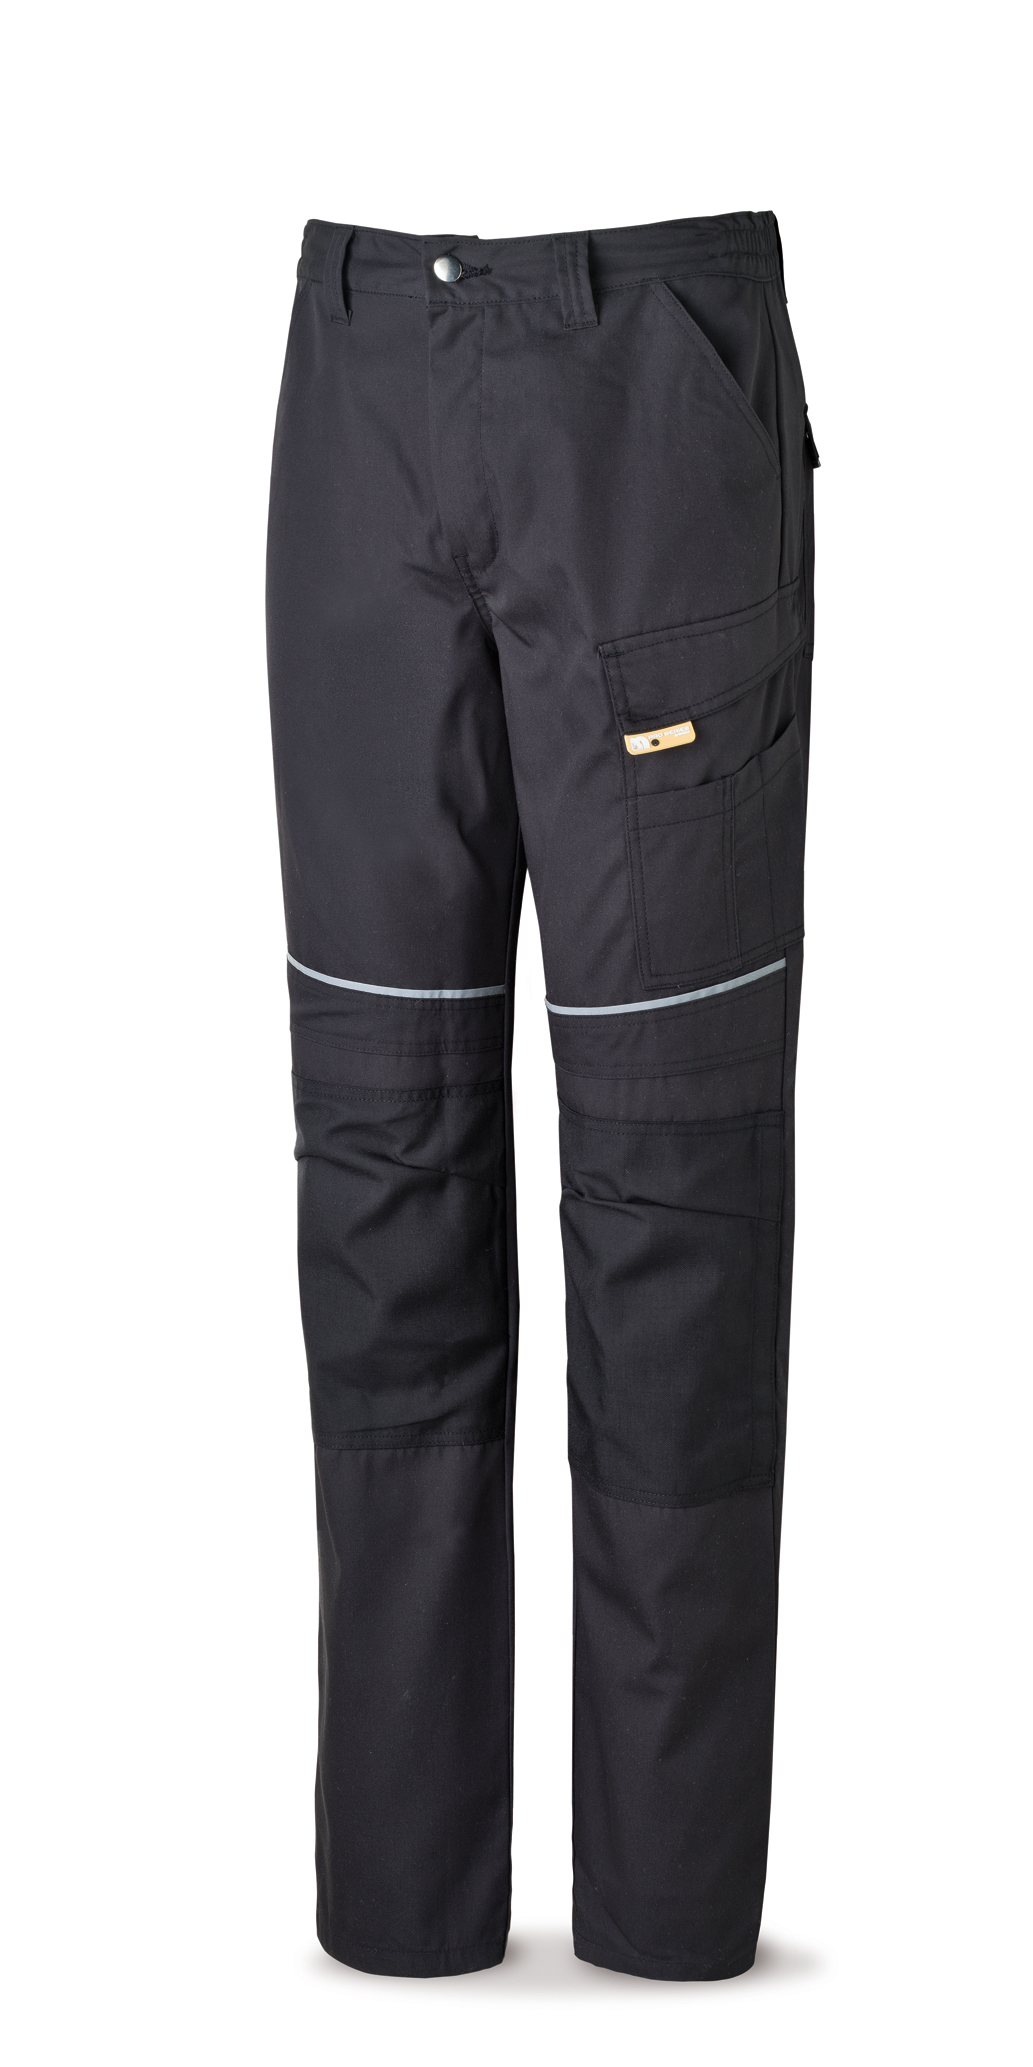 588-PN Vetements de travail laboral Pro Series Pantalon toile tergal 245 g. Coloris noir